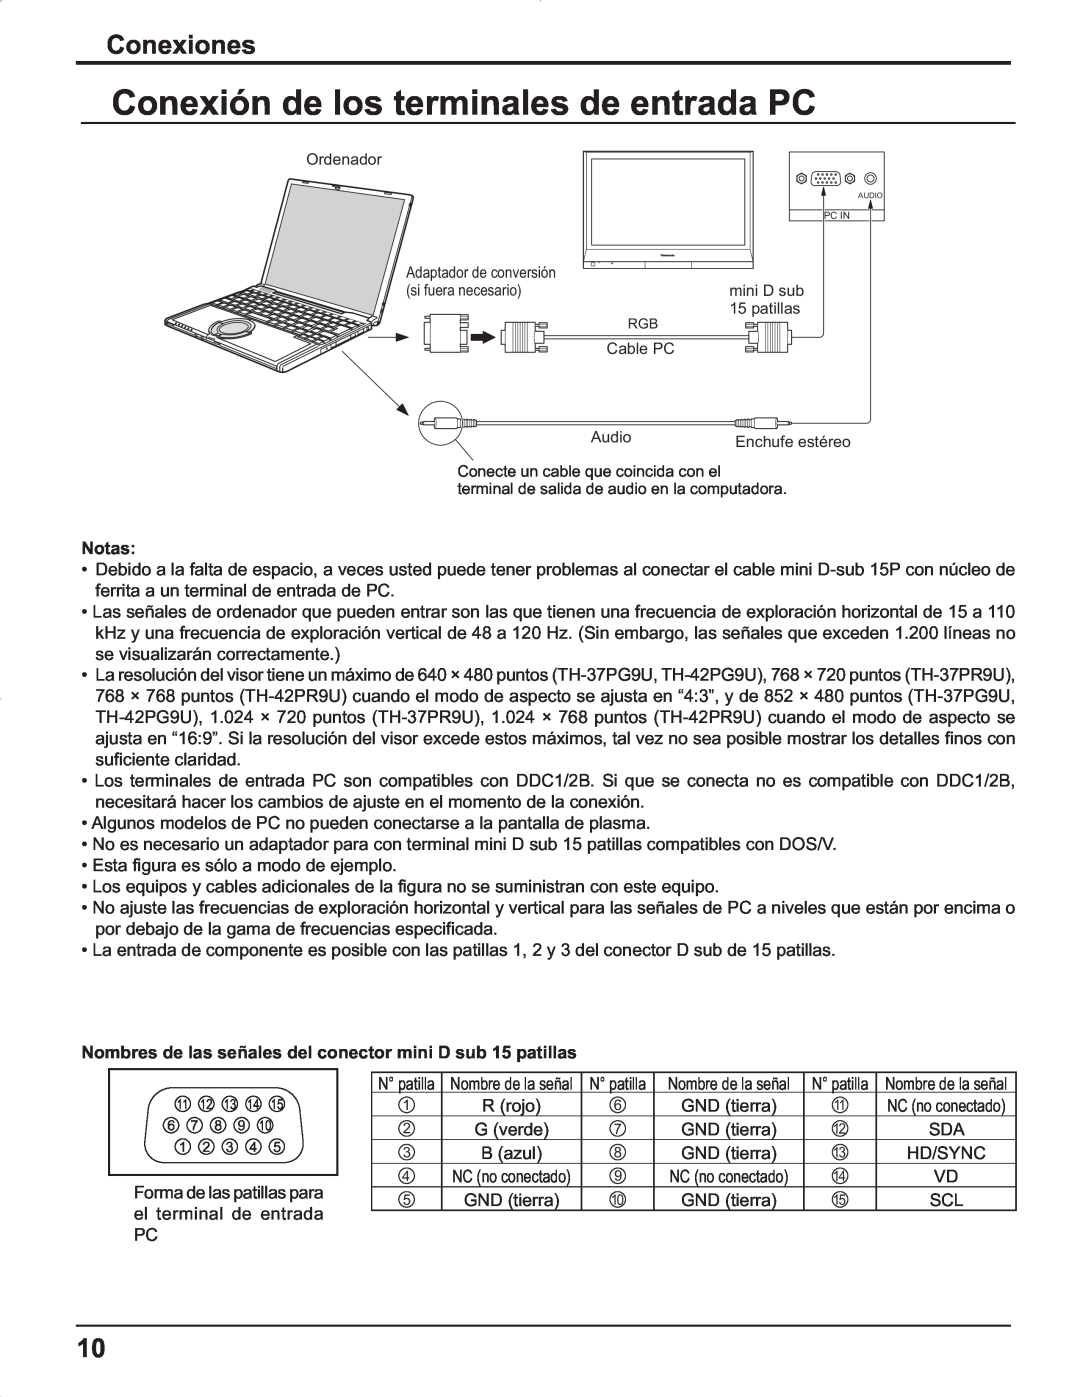 Panasonic TH-42PG9U, TH-37PR9U, TH-37PG9U, TH-42PR9U manual Conexión de los terminales de entrada PC, Conexiones 